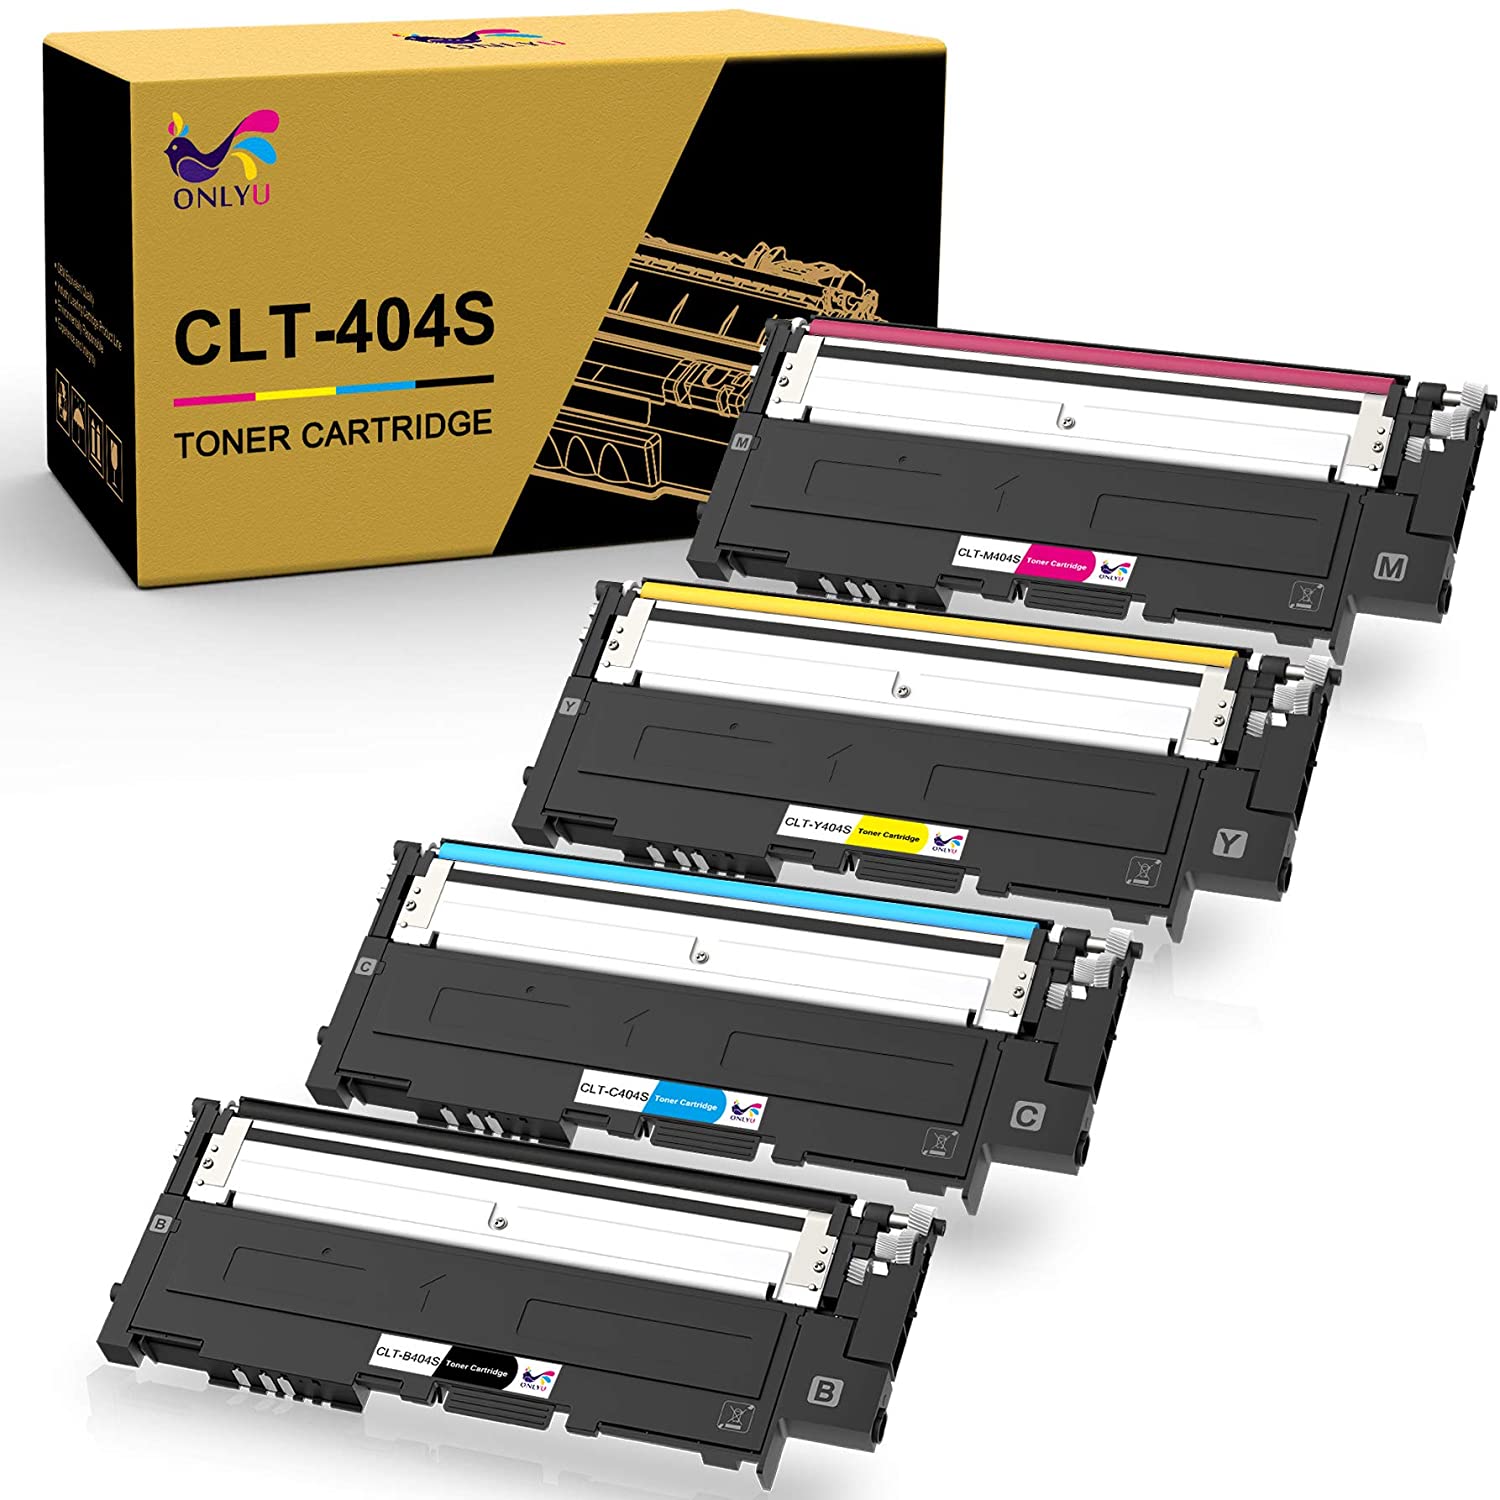 B0784P3WV3 ONLYU Compatible Toner Cartridge Replacement for Samsung CLT-404 CLT-K404S CLT-C404S CLT-M404S CLT-Y404S Xpress C430W C430FW C480FW SL-C430W SL-C480W SL-C480FN (4 Packs)